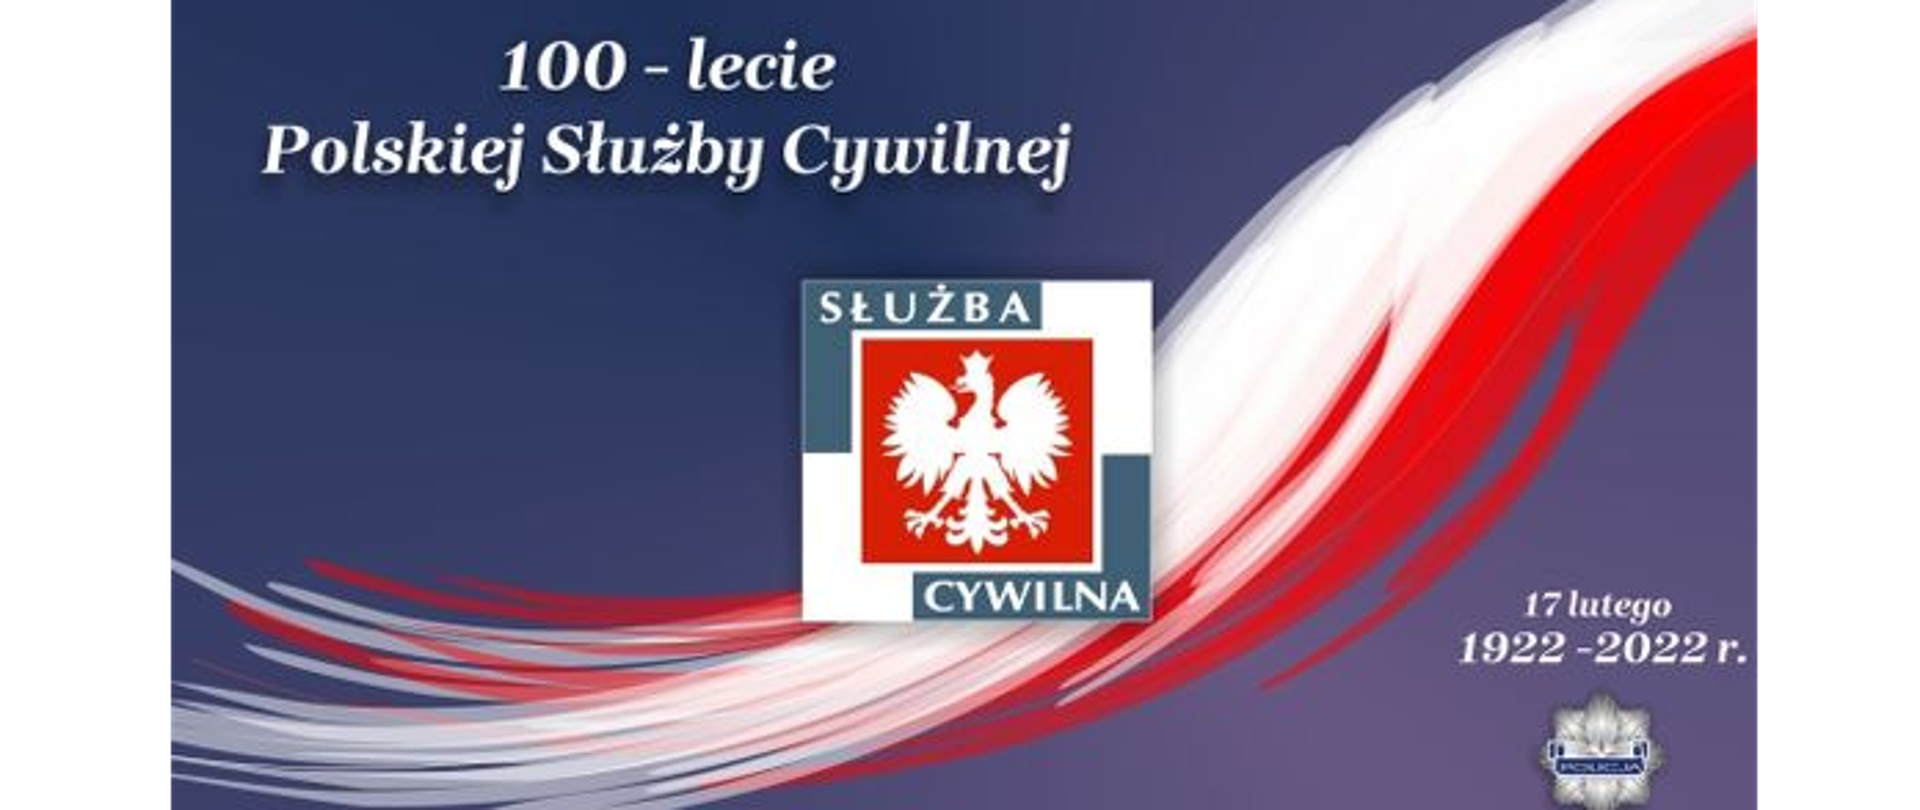 Polska Policja świętuje 100-lecie służby cywilnej - grafika promocyjna